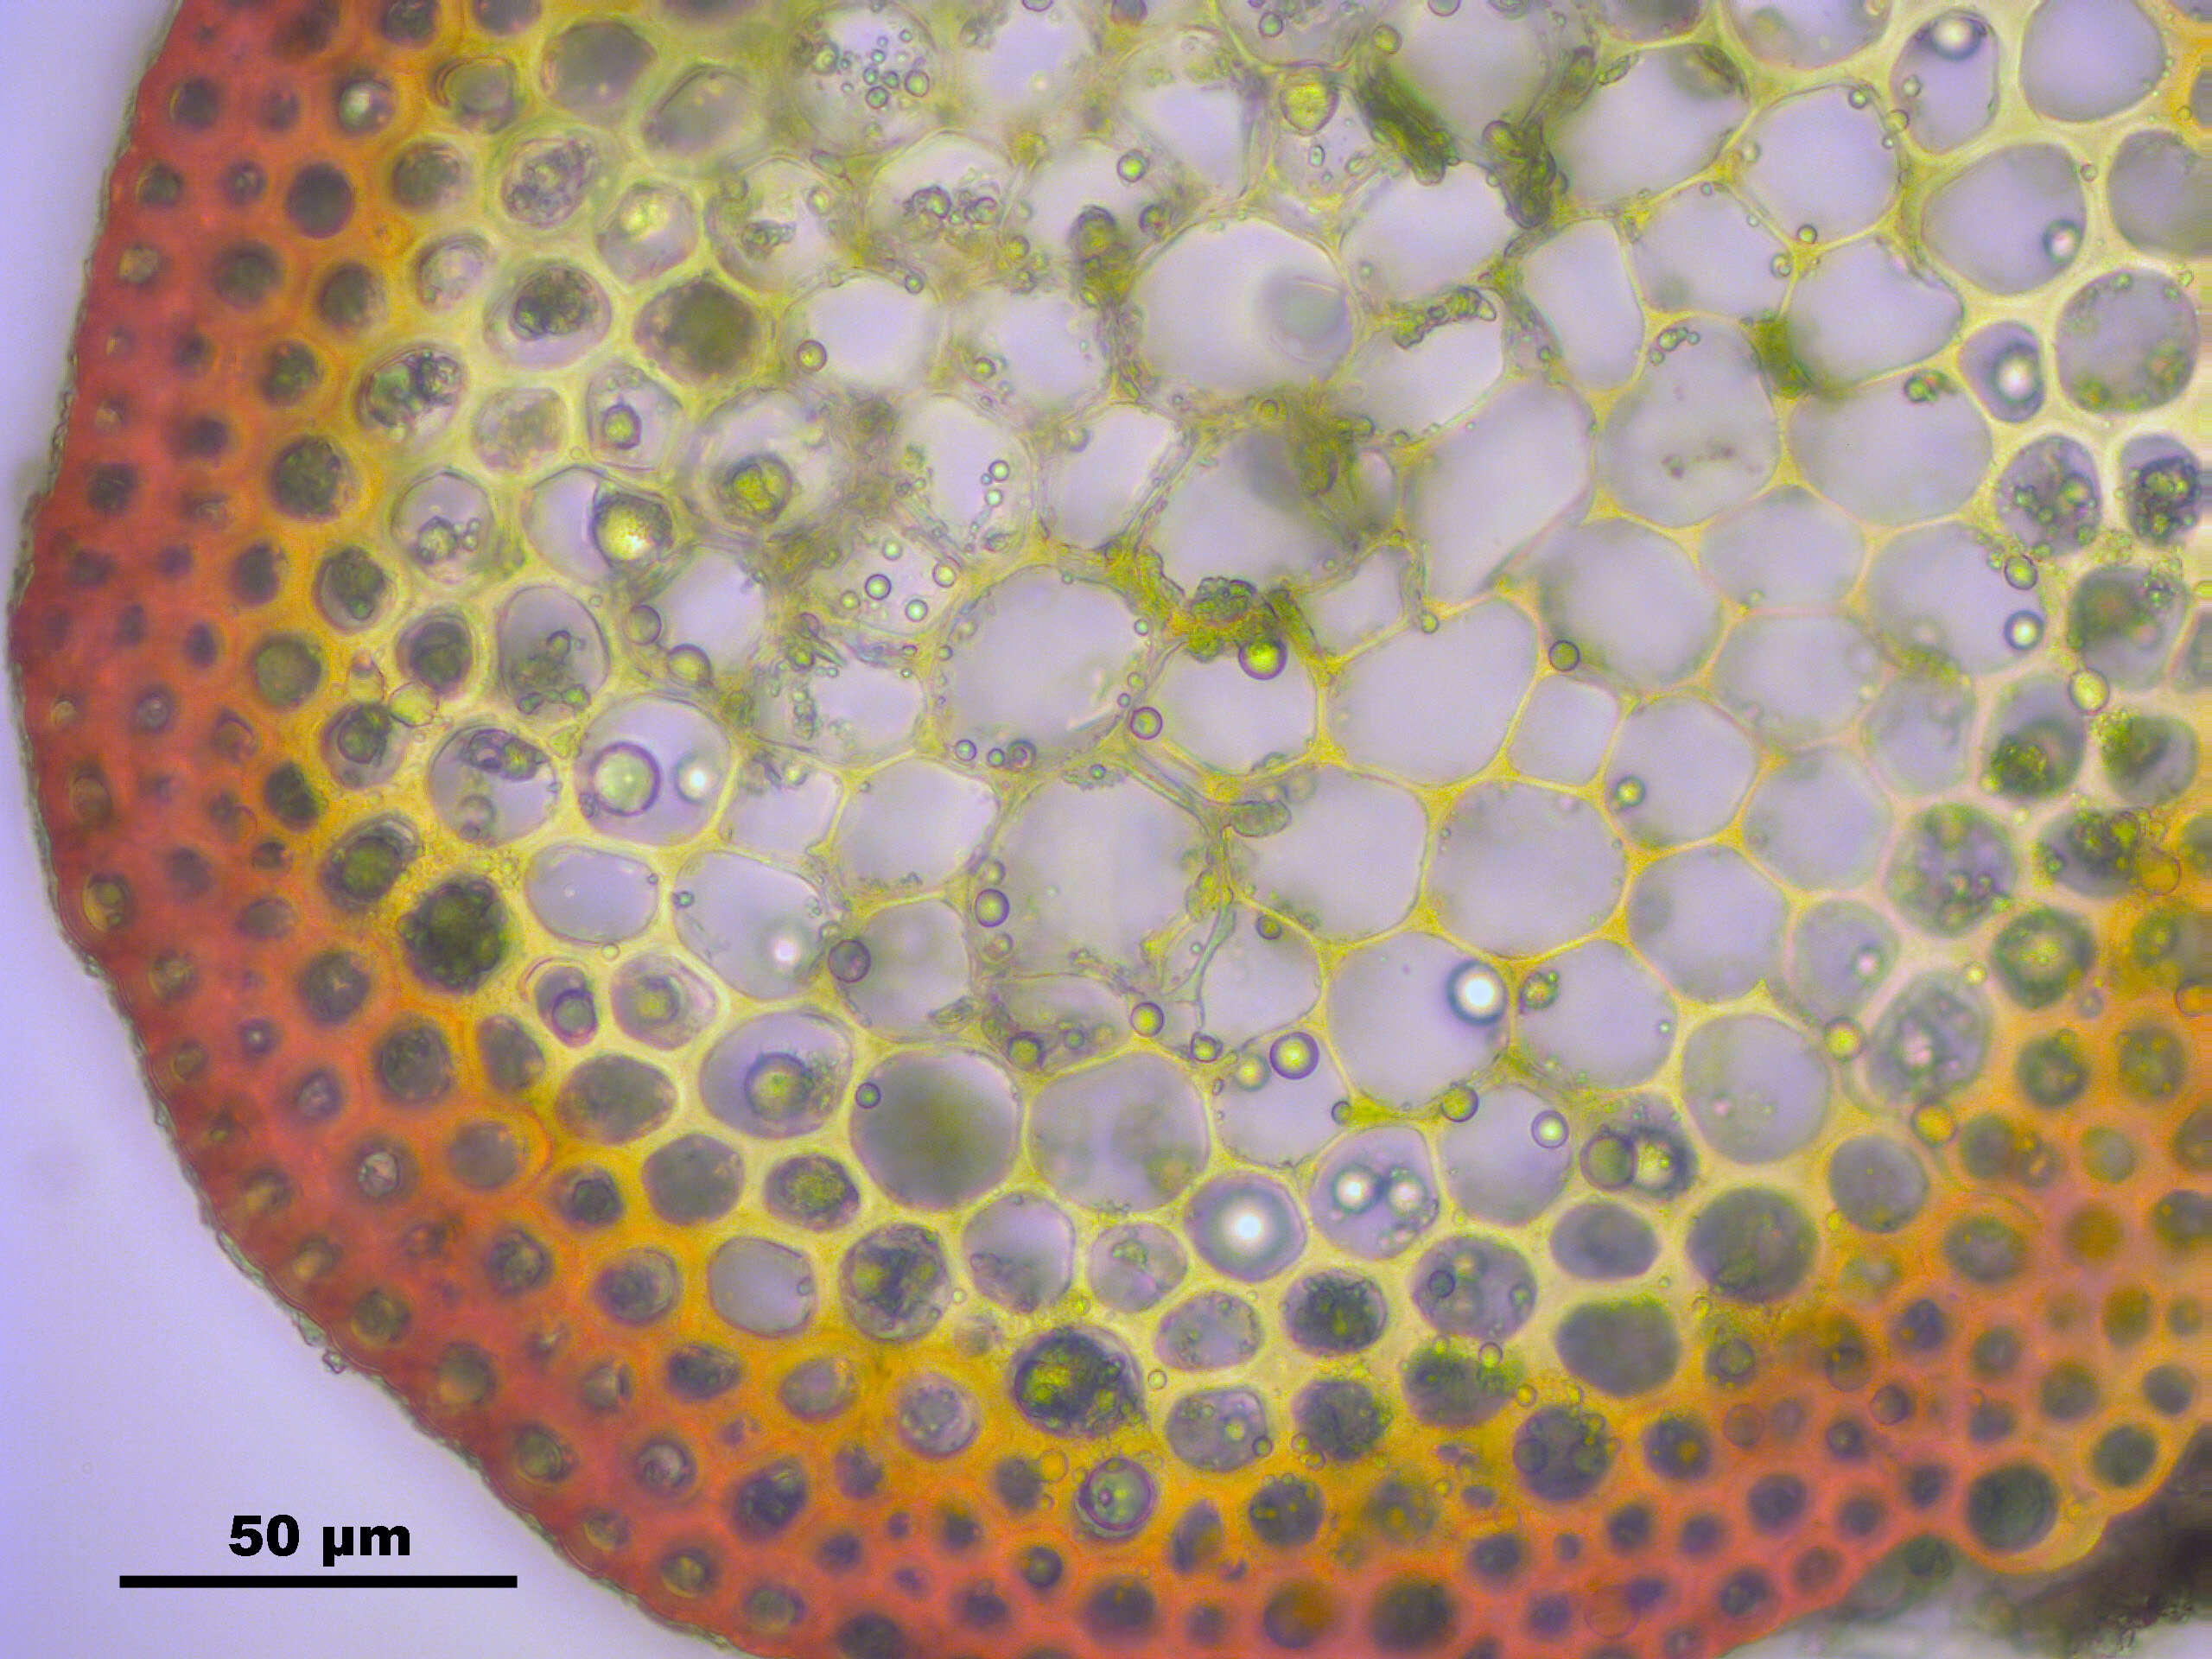 Image of antifever fontinalis moss